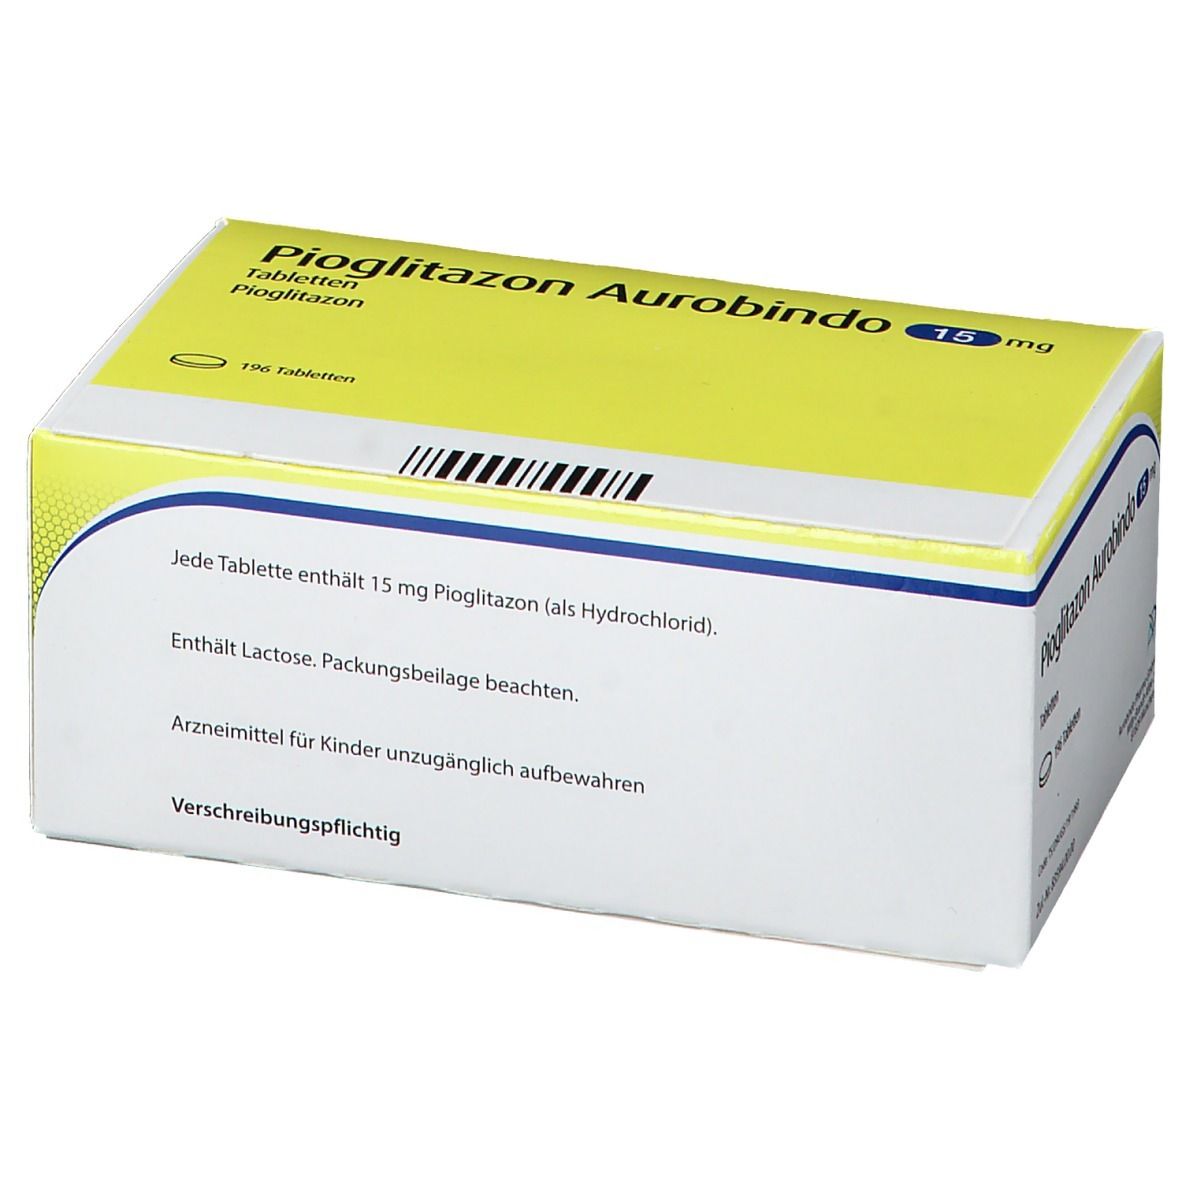 Pioglitazon Aurobindo 15 mg